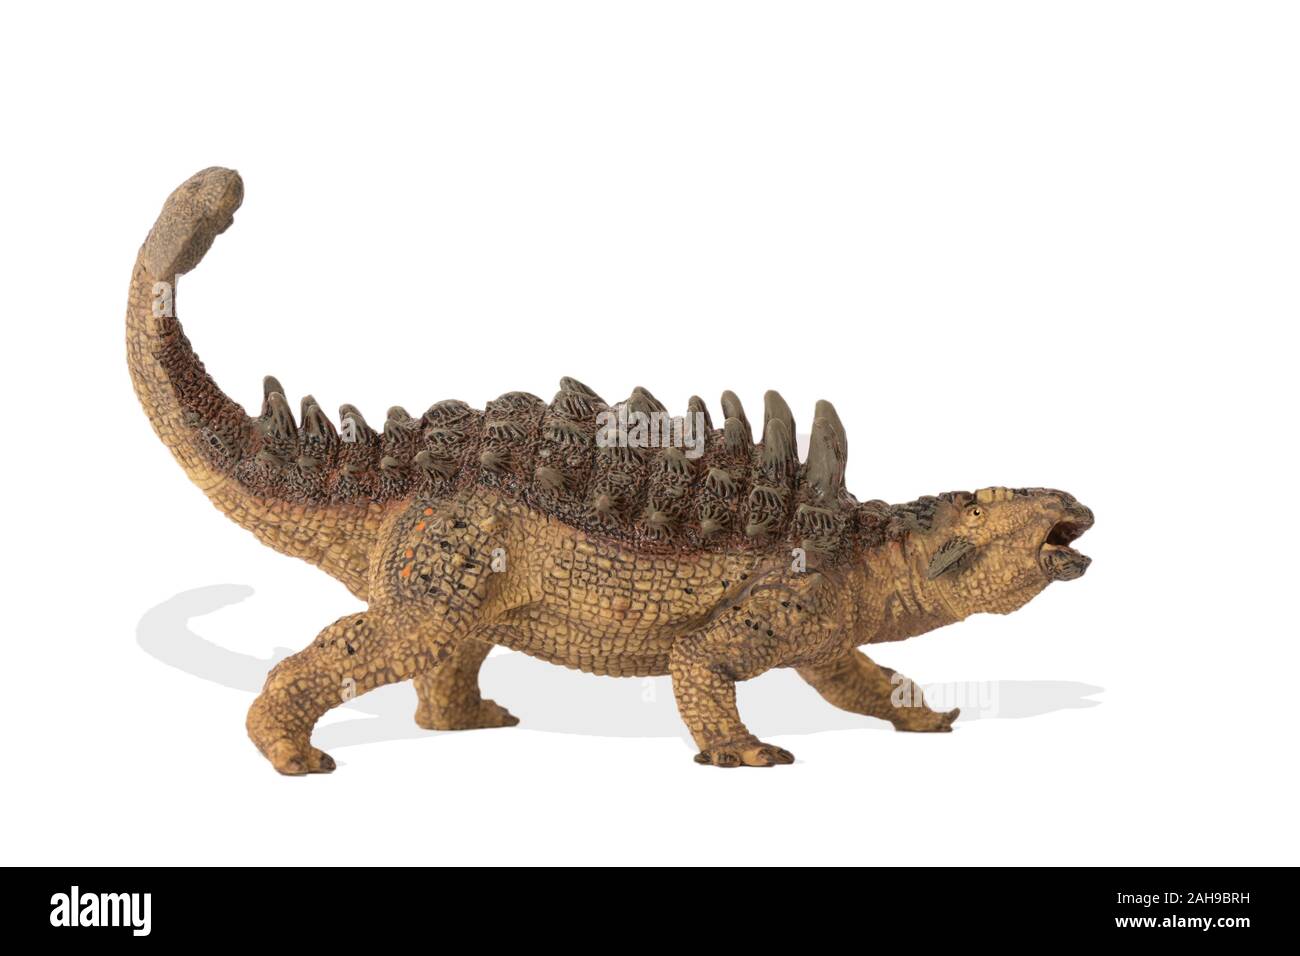 Ankylosaurus isolati su sfondo bianco. Vista laterale.Ankylosaurus è un dinosauro erbivoro vissuto nel Cretaceo era. Immagine ideale per libro scientifico Foto Stock